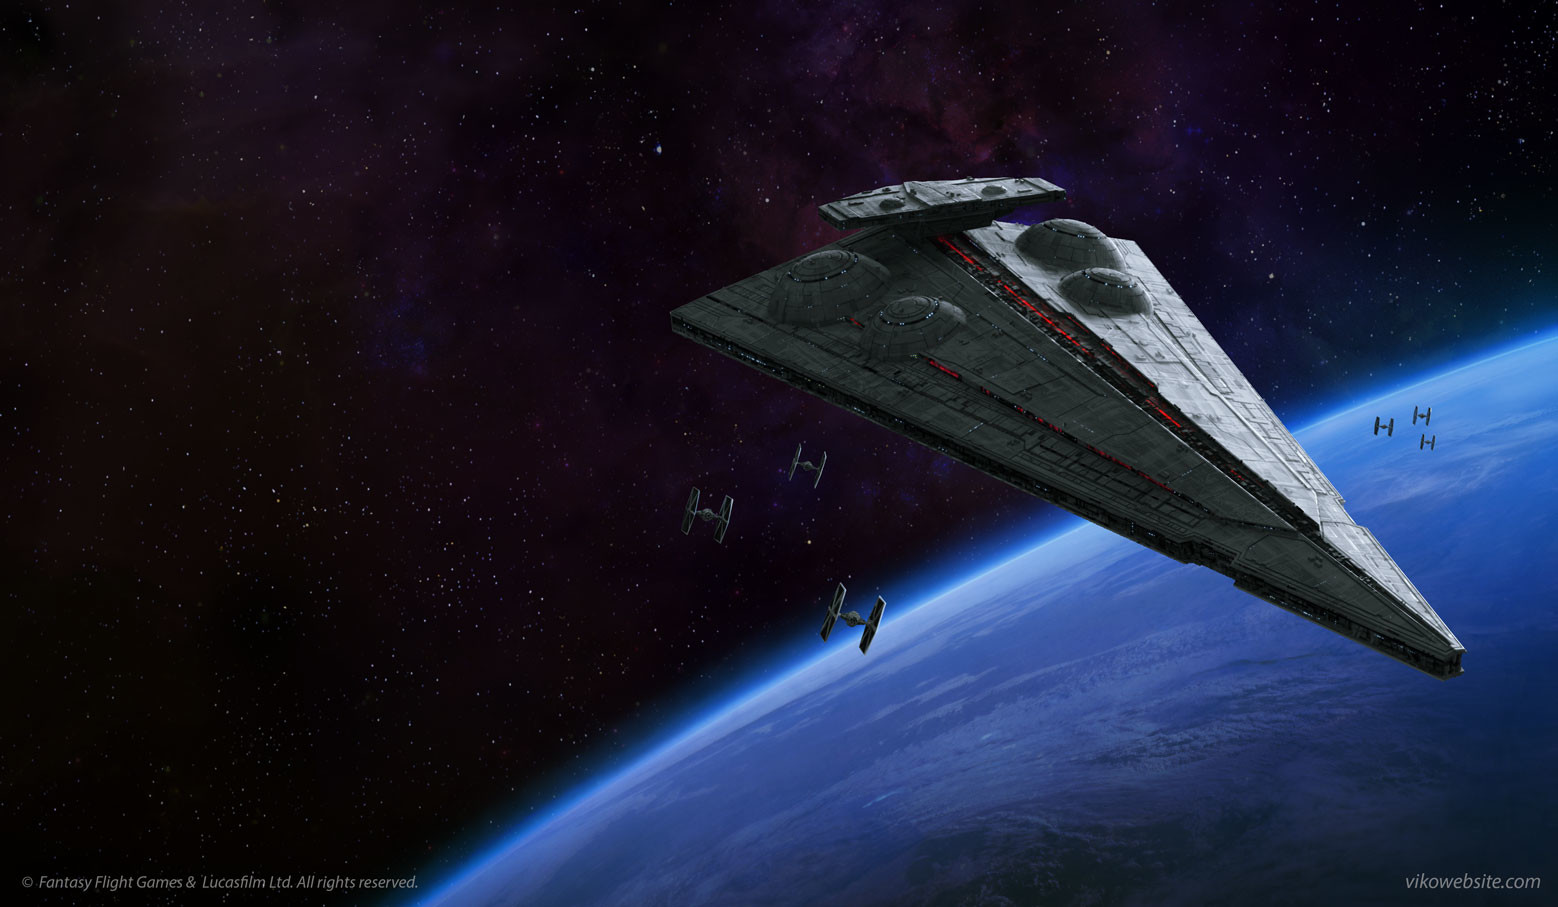 General 1558x907 Viko Menezes Star Wars artwork TIE Fighter space